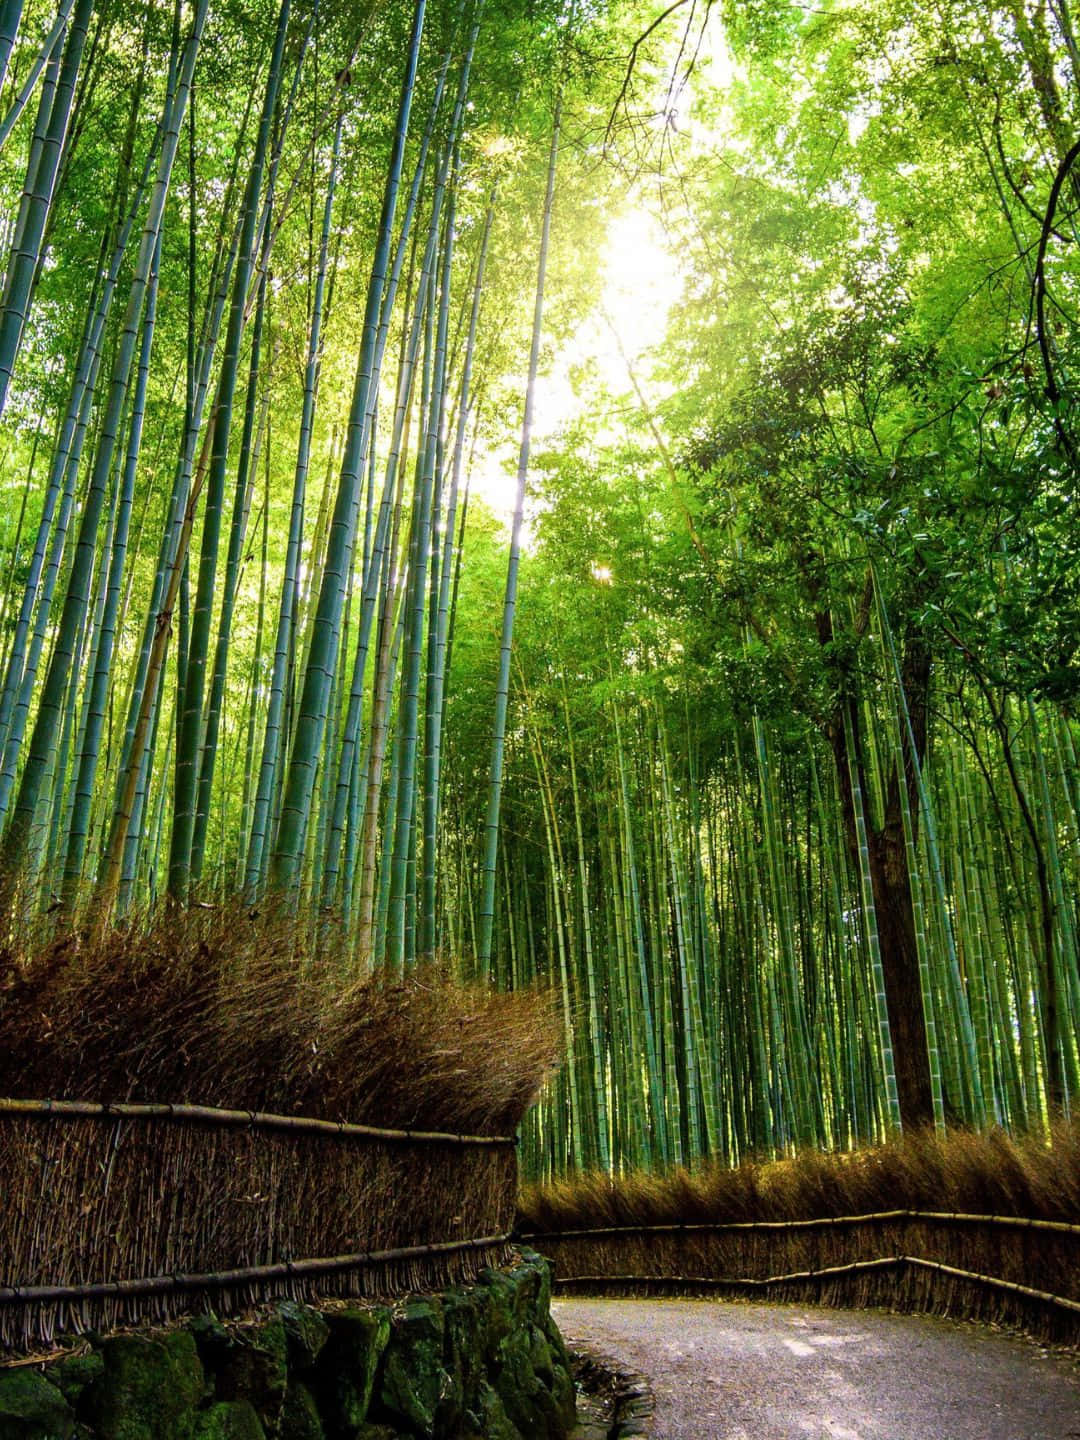 Fondode Pantalla De Bambú En Resolución 1440p, Camino Lleno De Árboles De Bambú.